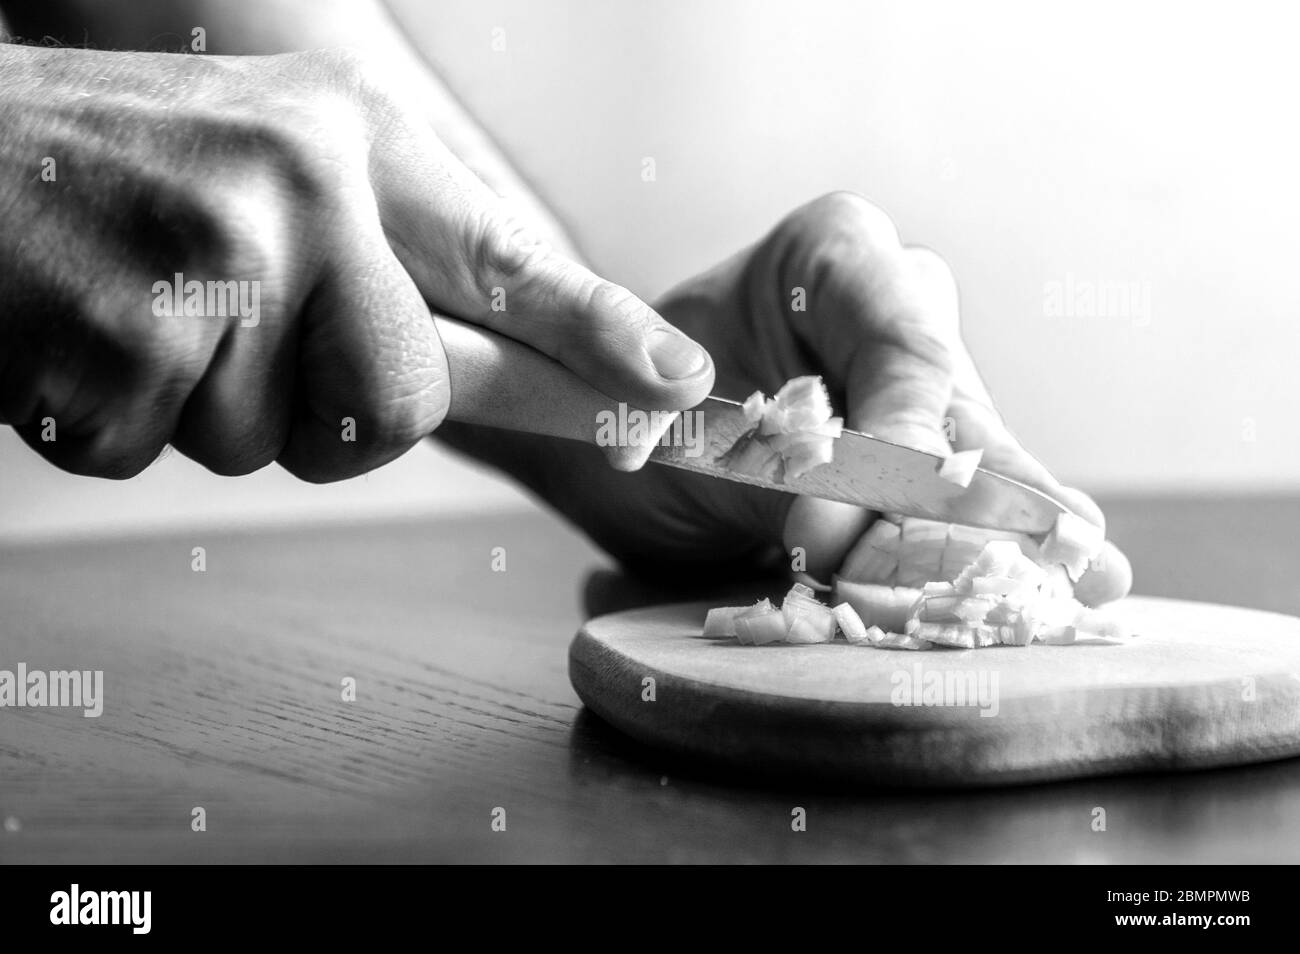 l'homme coupe des oignons avec un couteau dans la cuisine. image en noir et blanc Banque D'Images